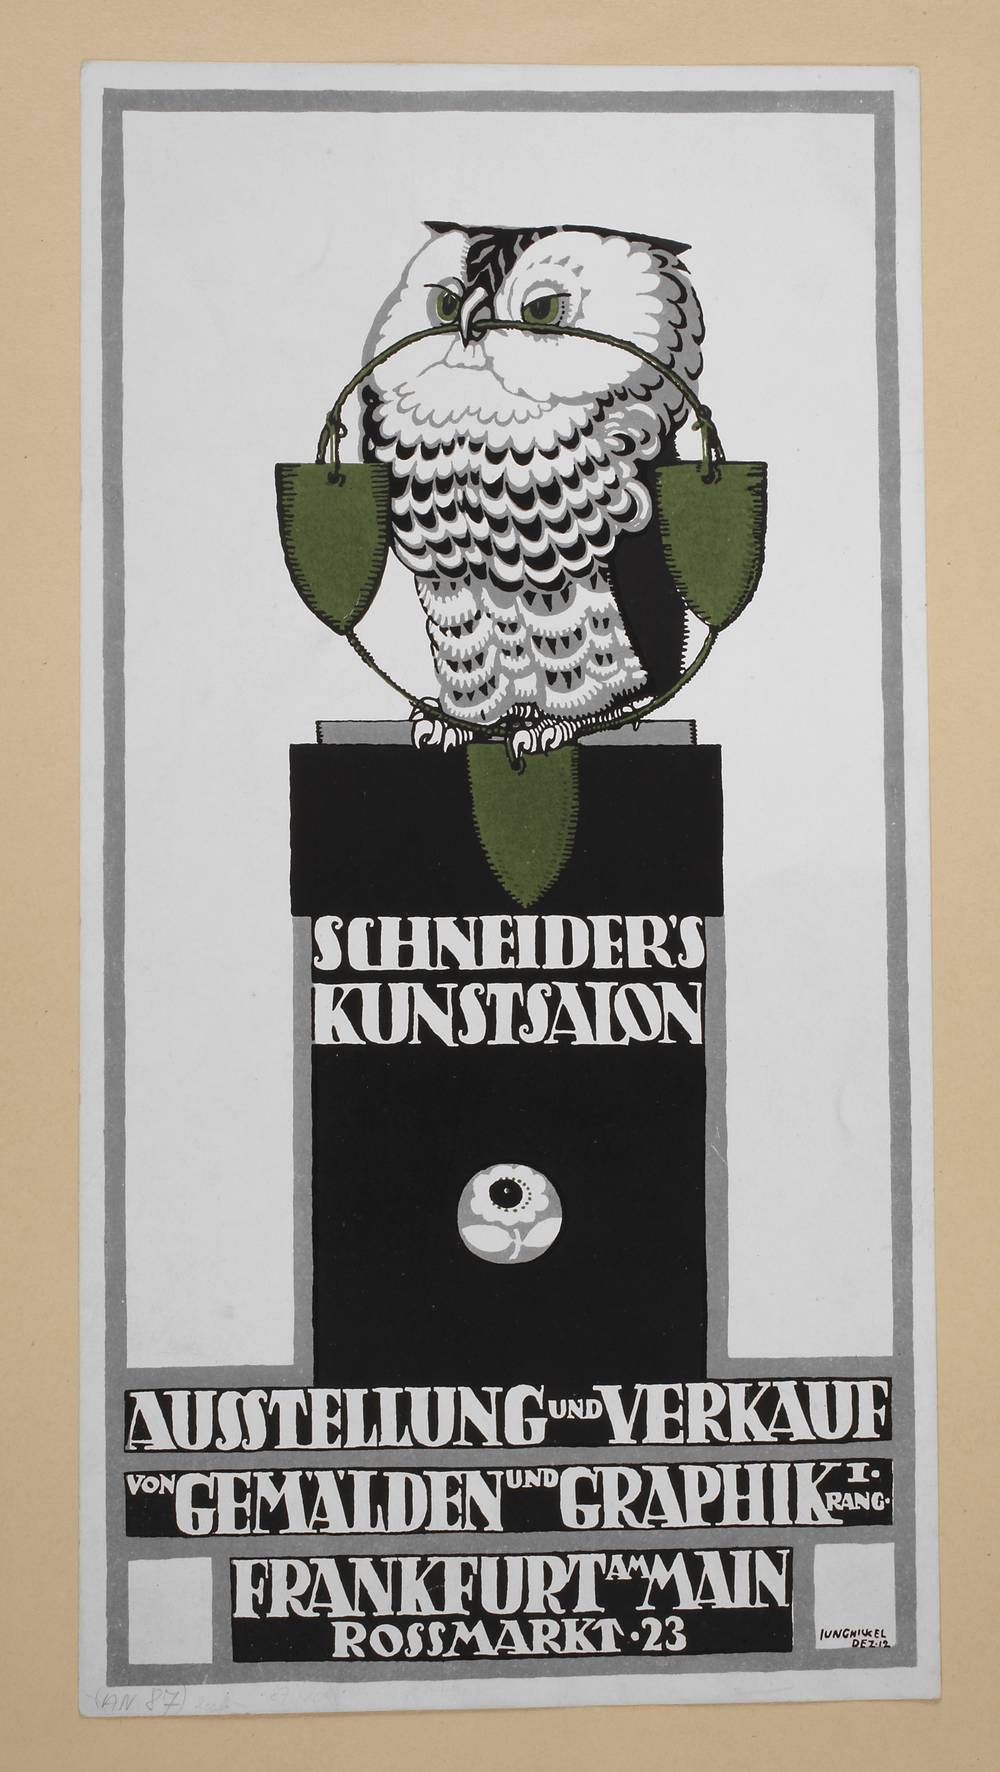 Plakatentwurf Schneiders Kunstsammlung